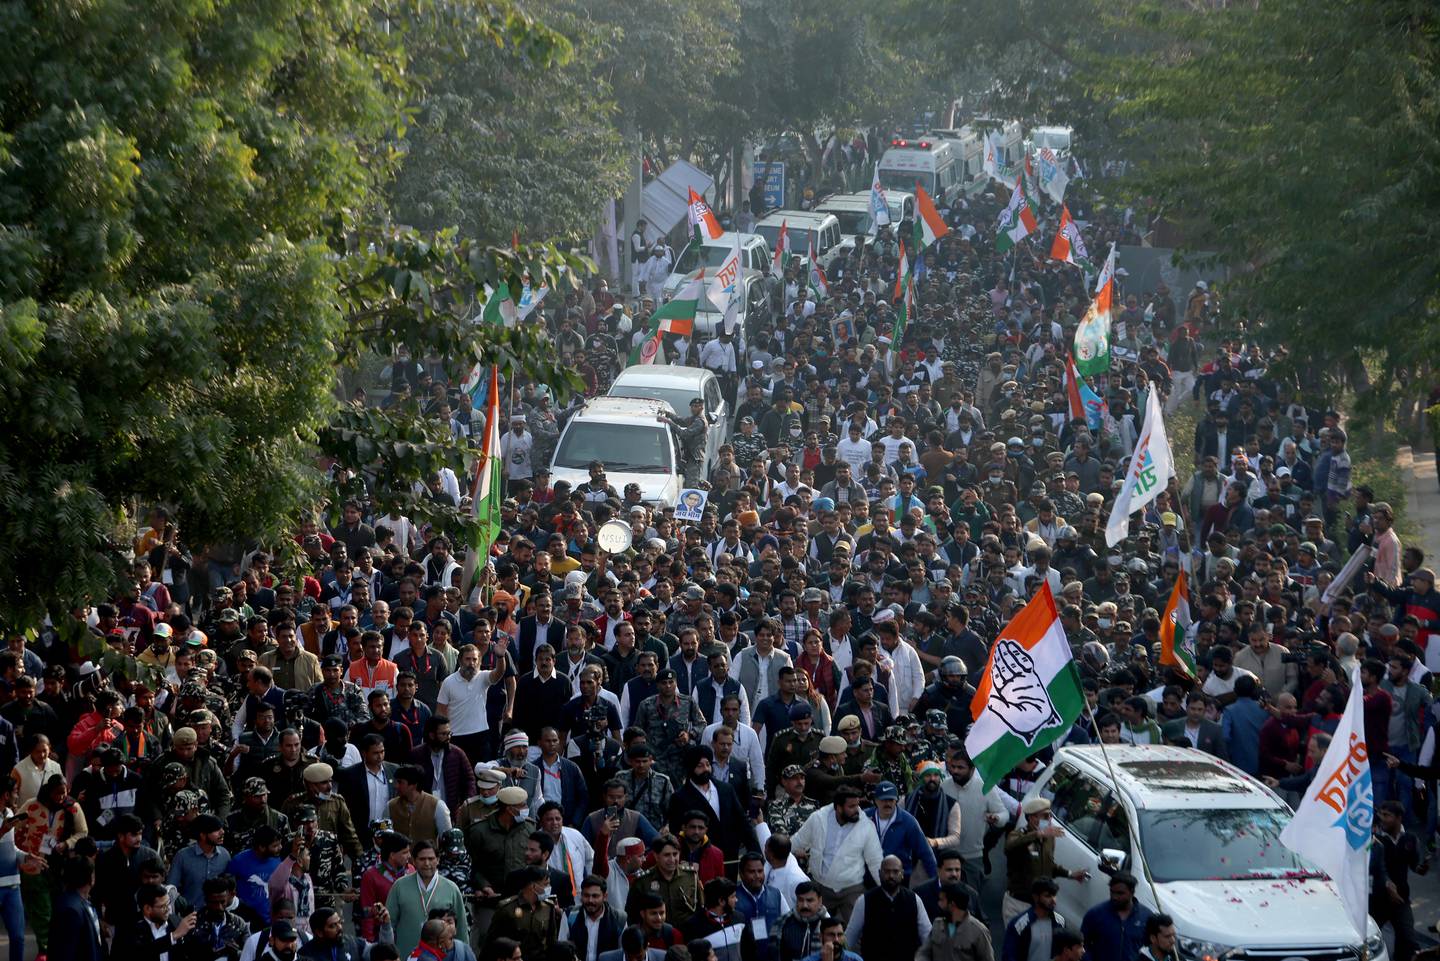 Rahul Gandhi a reçu le soutien de dizaines de milliers de personnes lors de sa marche.  Reuter